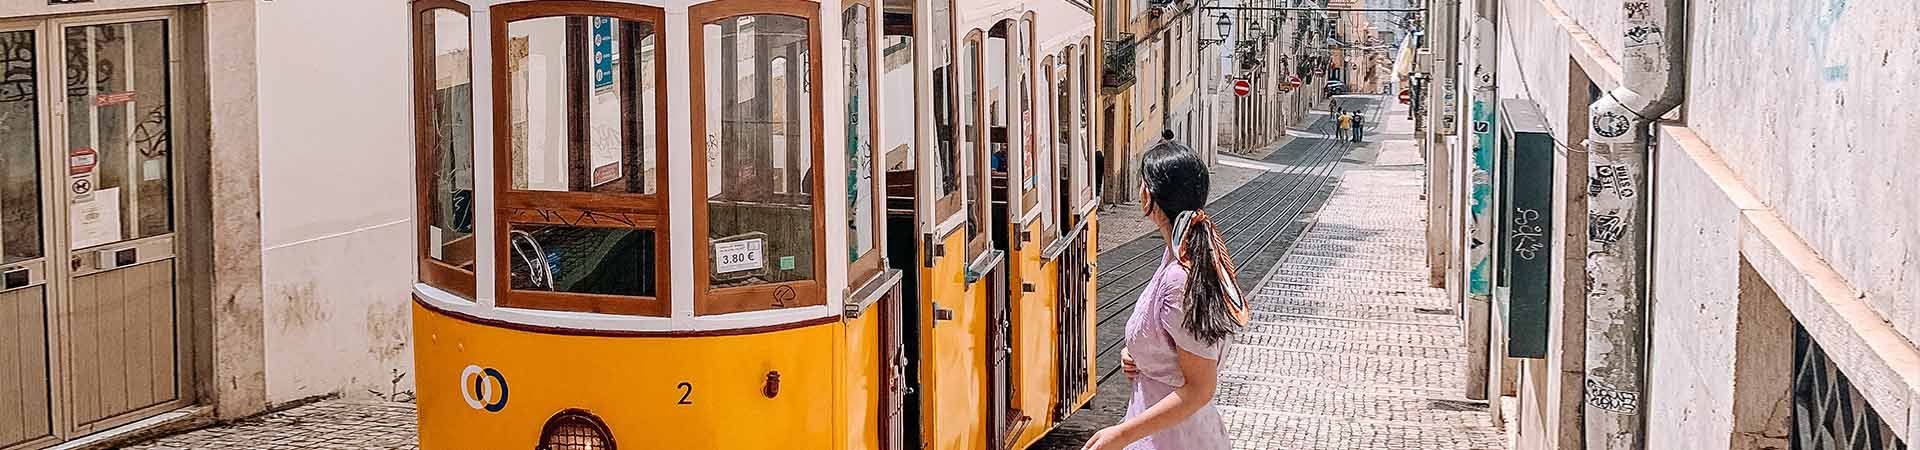 En el centro de la imagen, un tranvía de Lisboa amarillo y blanco, que pasa por una de las calles empedradas de Lisboa, con edificios de fachadas antiguas. A la derecha del tranvía, hay una chica morena, con un vestido lila y el pelo recogido hacia atrás con un pañuelo de colores, que mira el tranvía.